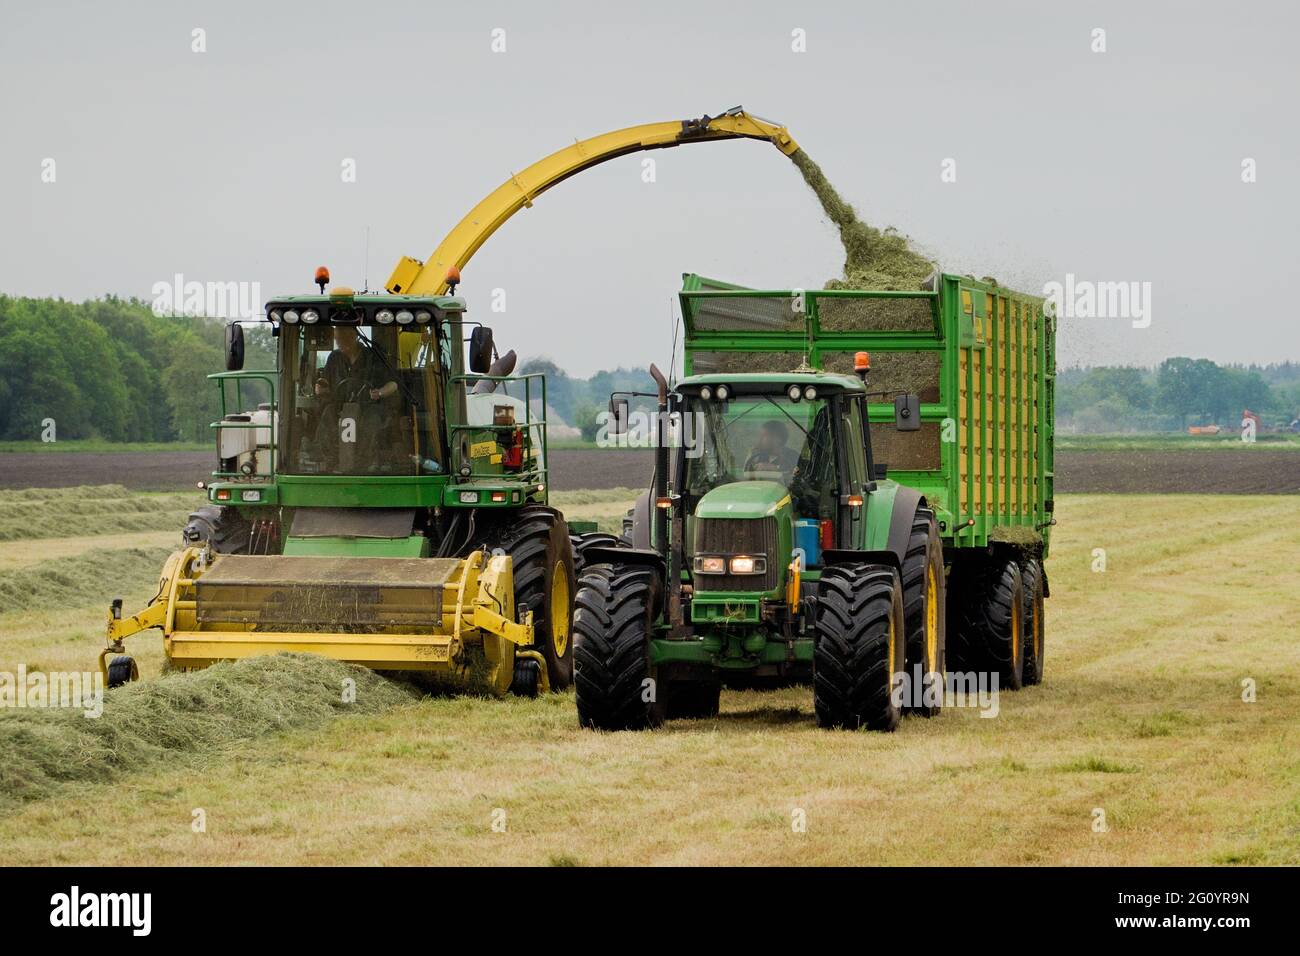 Récolte de l'herbe, deux tracteurs en fonctionnement, une récolteuse-hacheuse et collecte du foin pour l'ensilage dans la remorque Banque D'Images